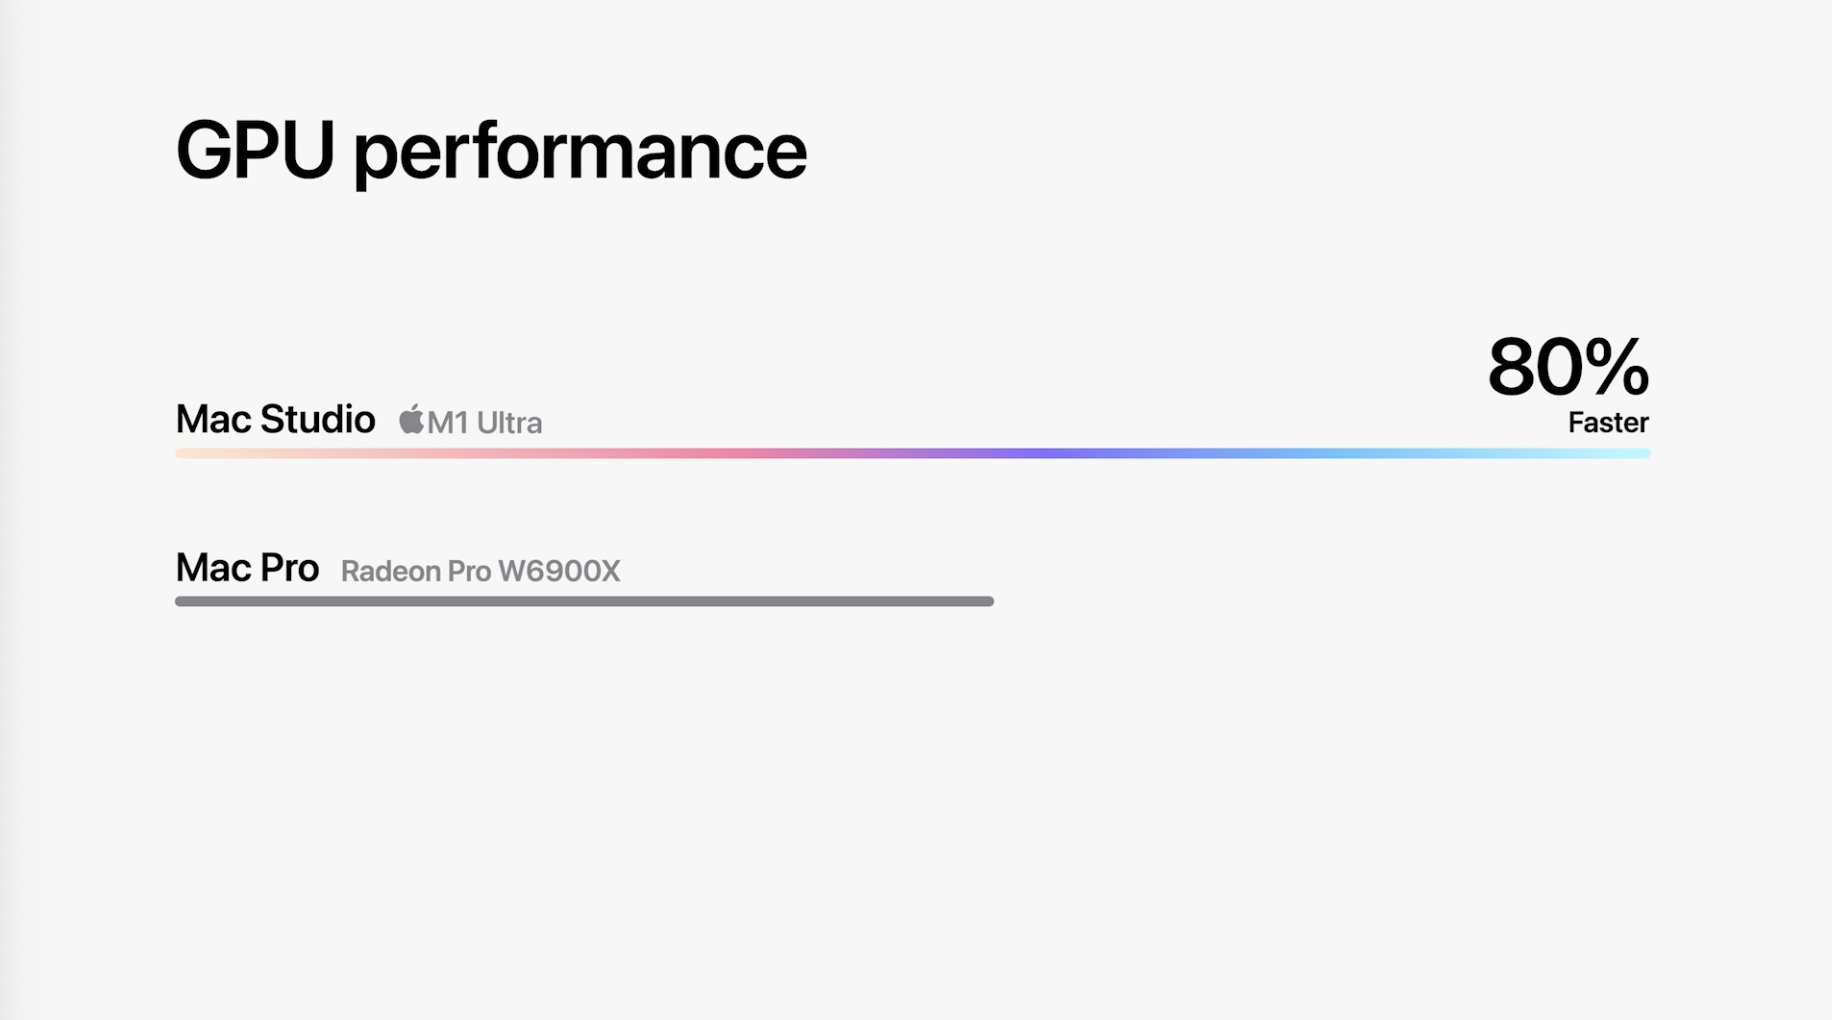 GPU del M1 Ultra un 80% más rápida que una Radeon Pro W6900X